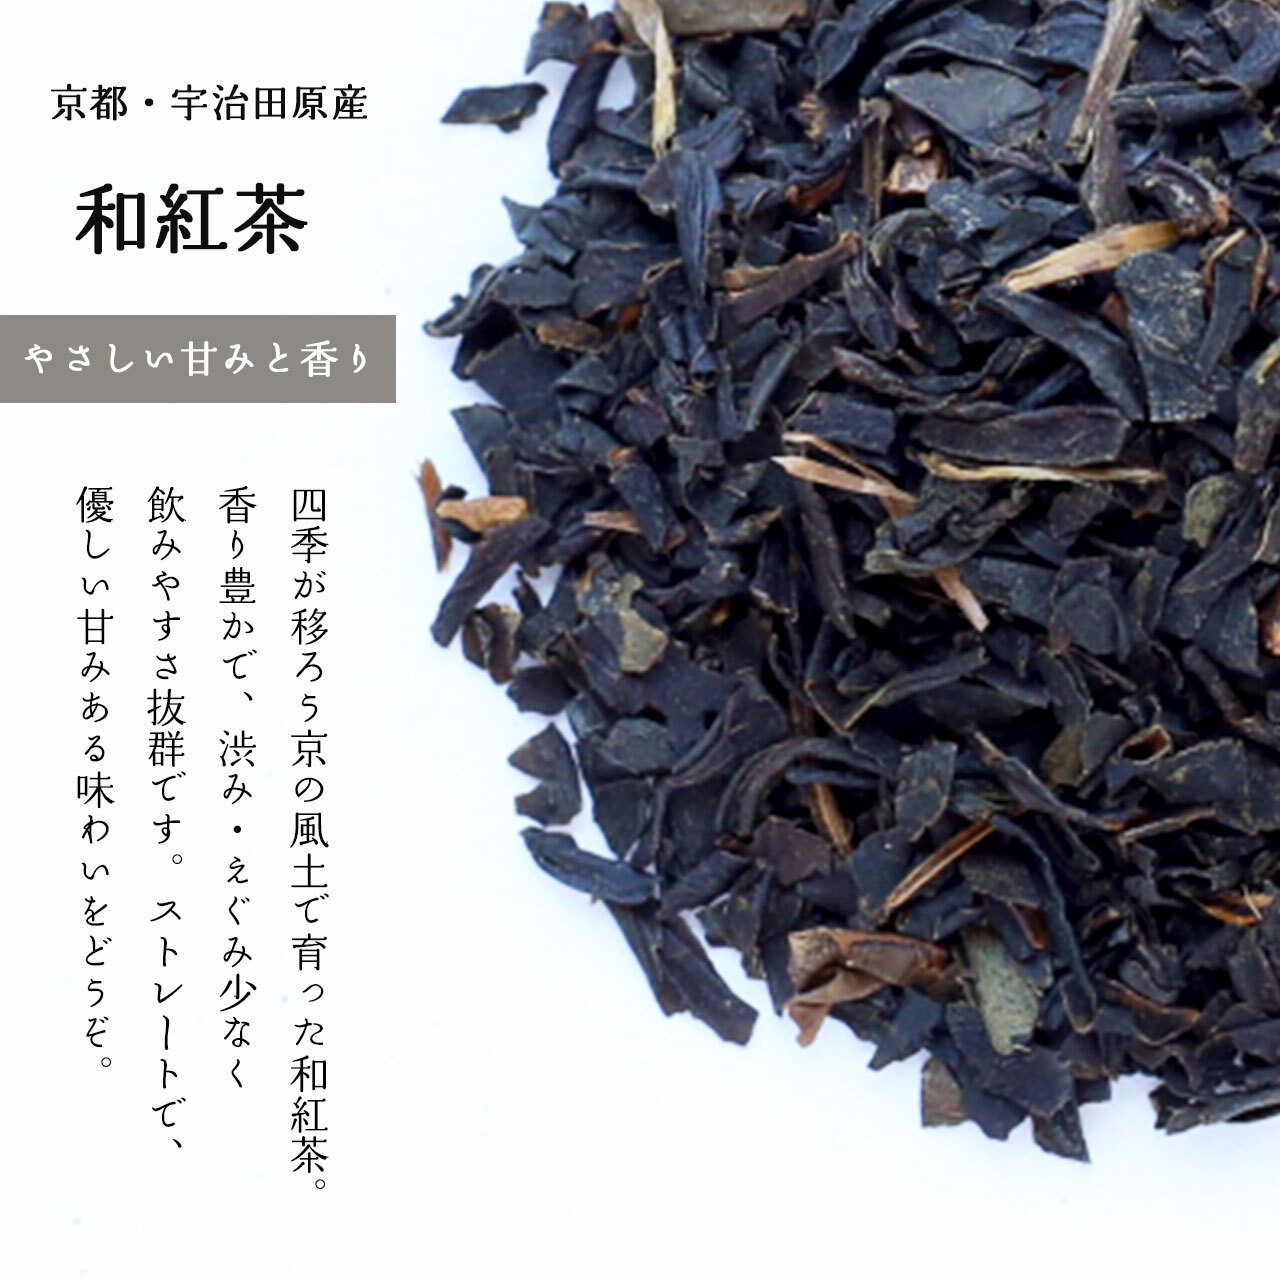 優しい甘みと香りの京和紅茶